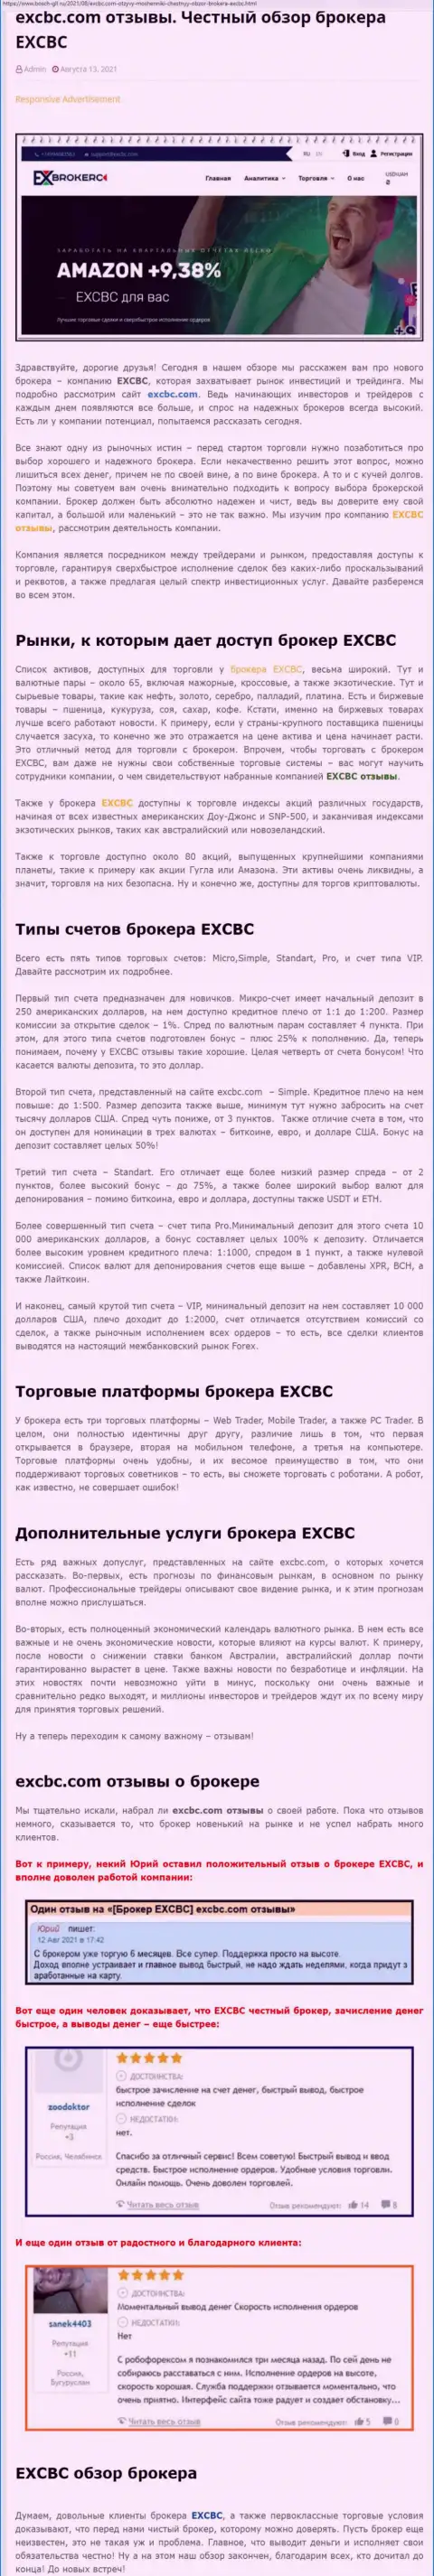 Обзорный материал об ФОРЕКС-организации EXCBC на ресурсе Бош Глл Ру